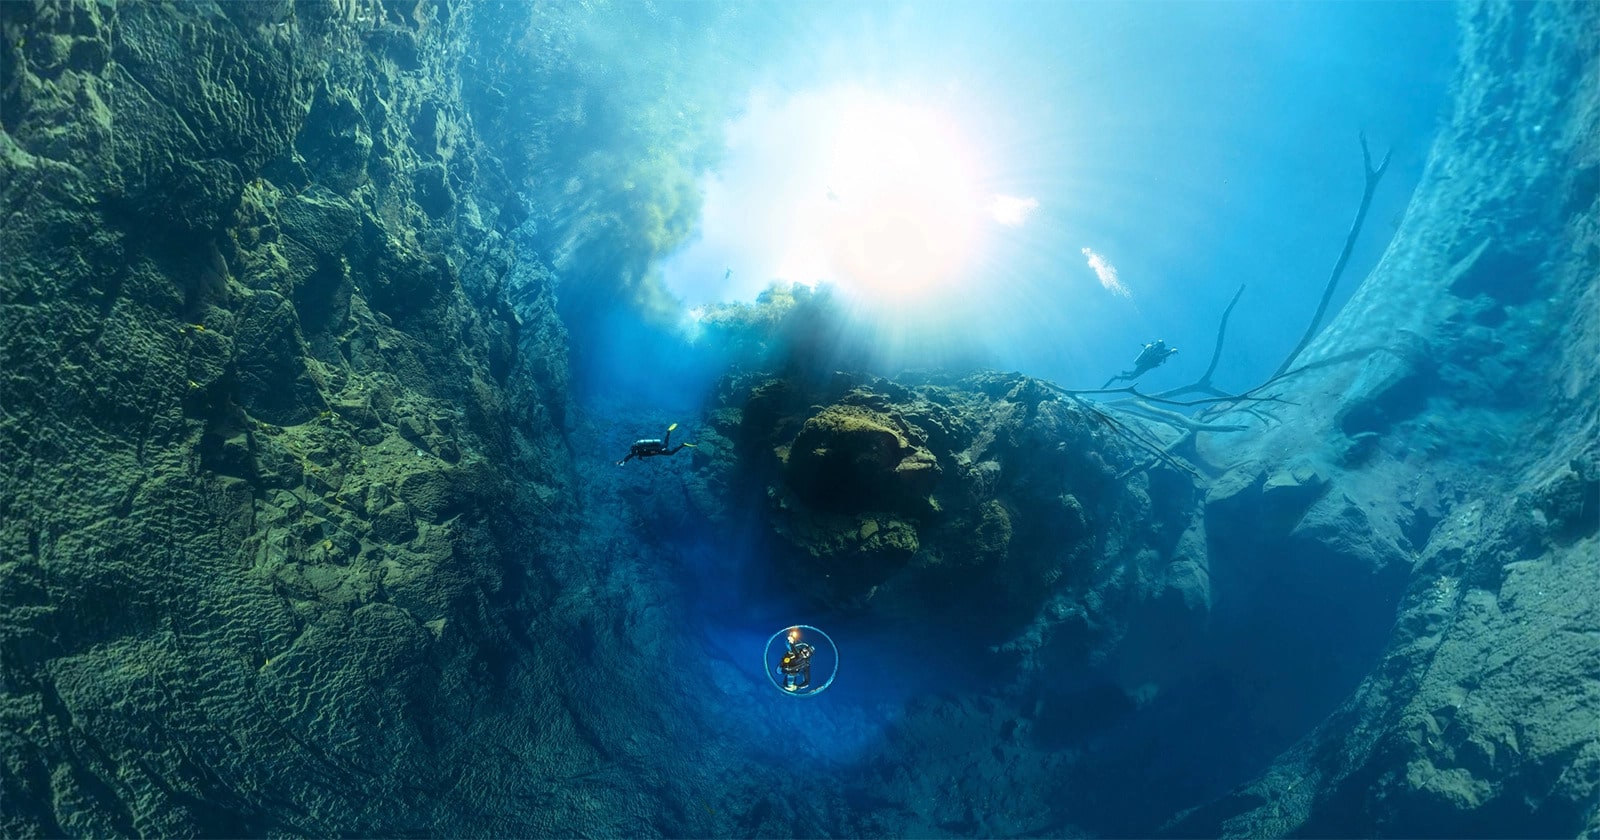 Đây là bức ảnh Panorama dưới nước lớn nhất thế giới, có độ phân giải 826.9MP